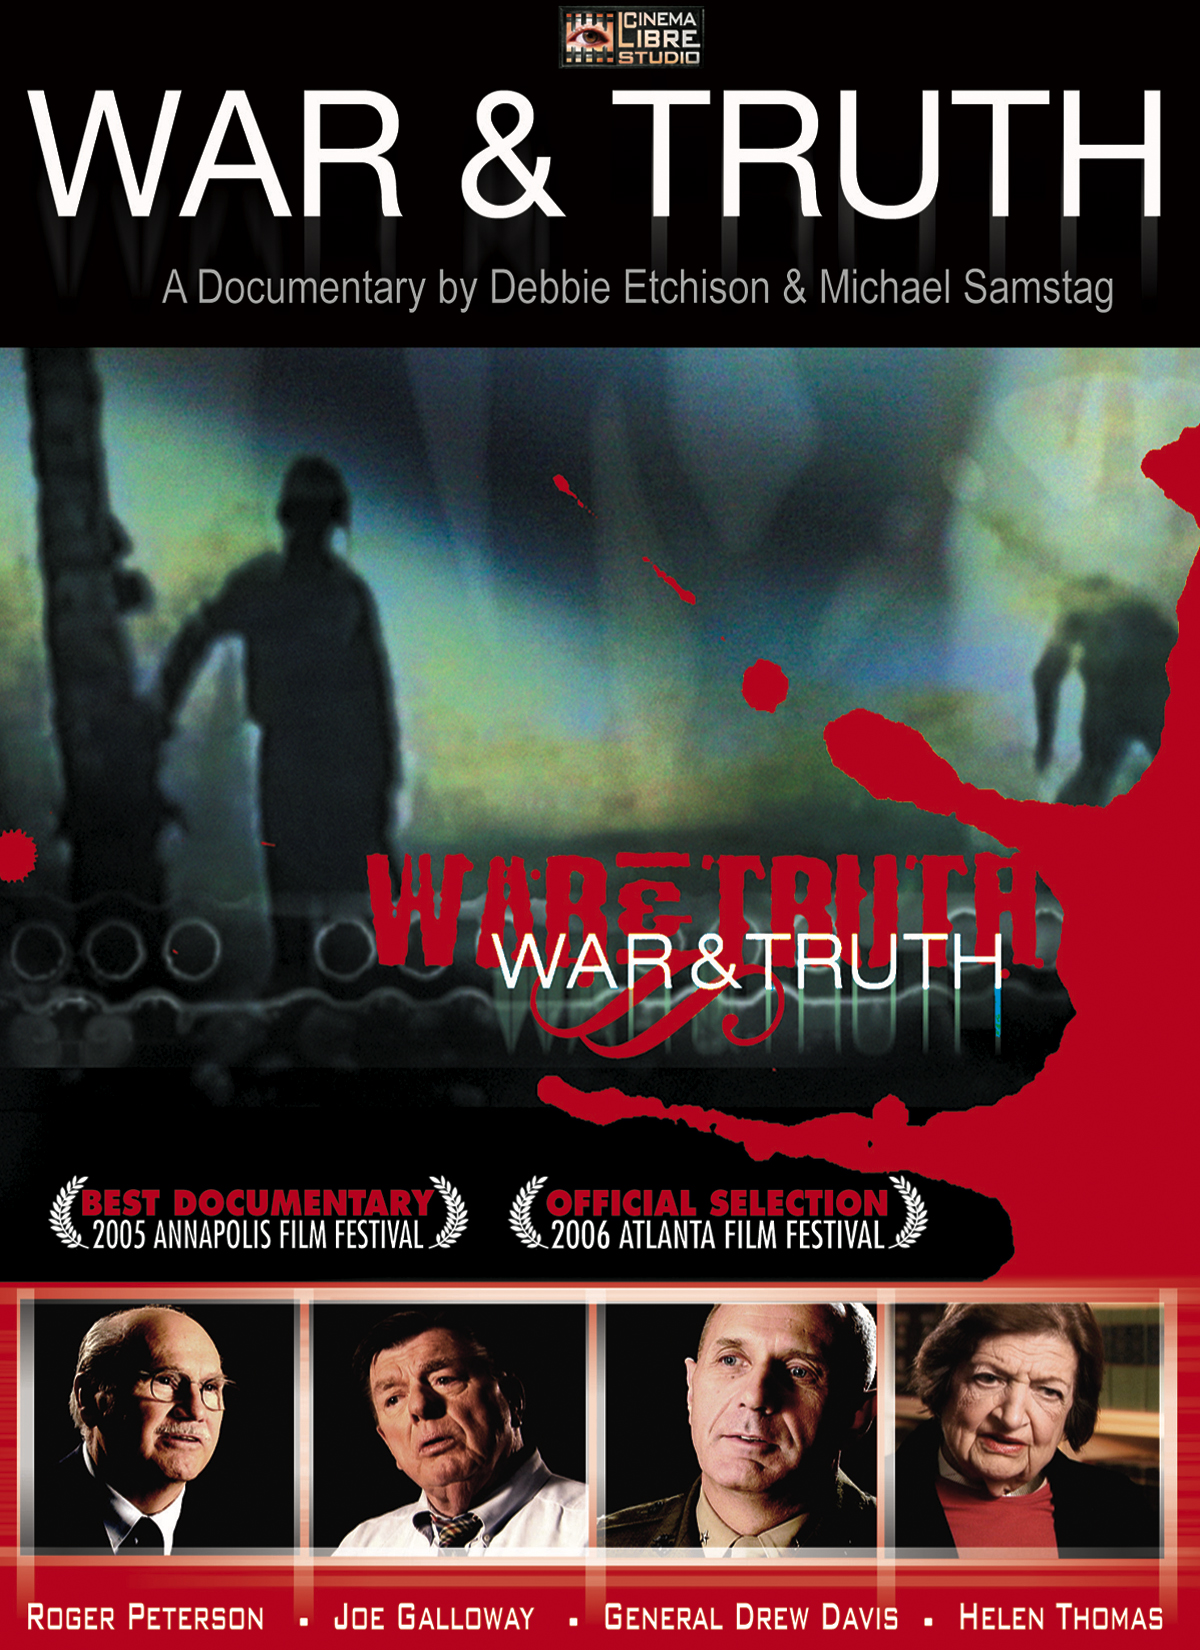 WAR & TRUTH